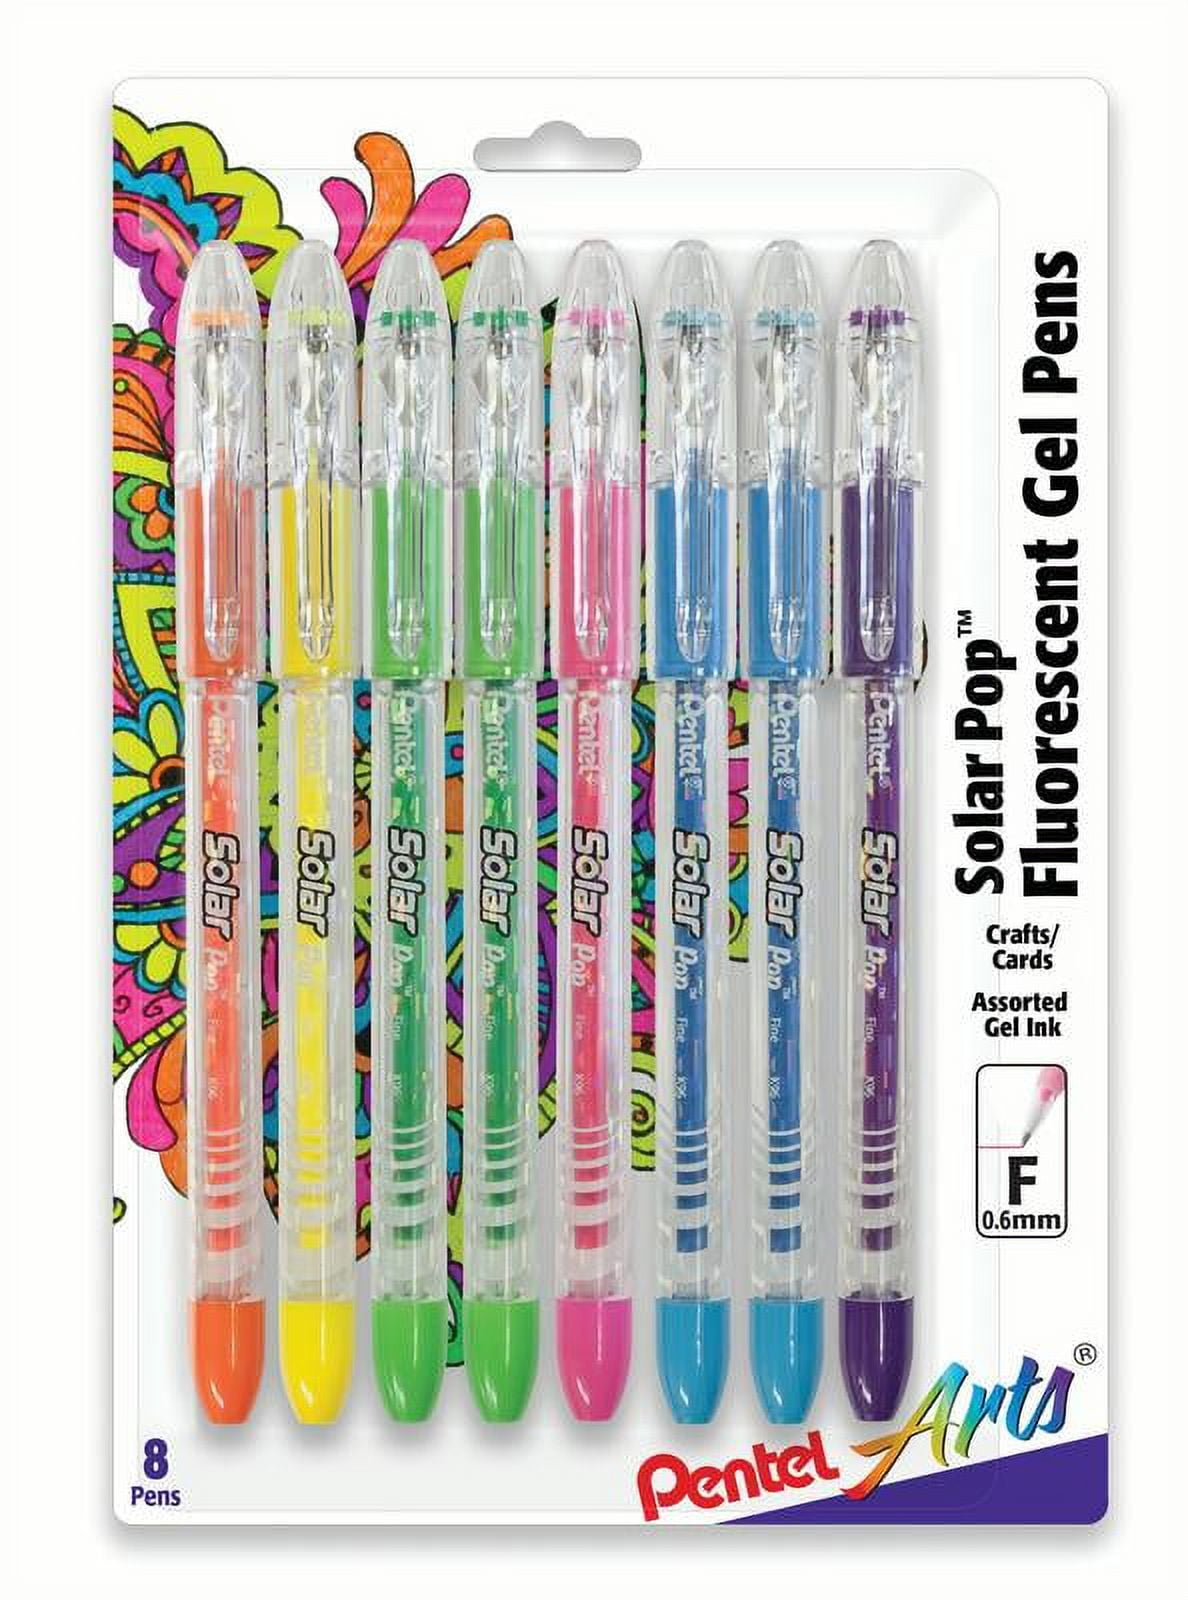 Pentel Sparkle Pop Pens and Set